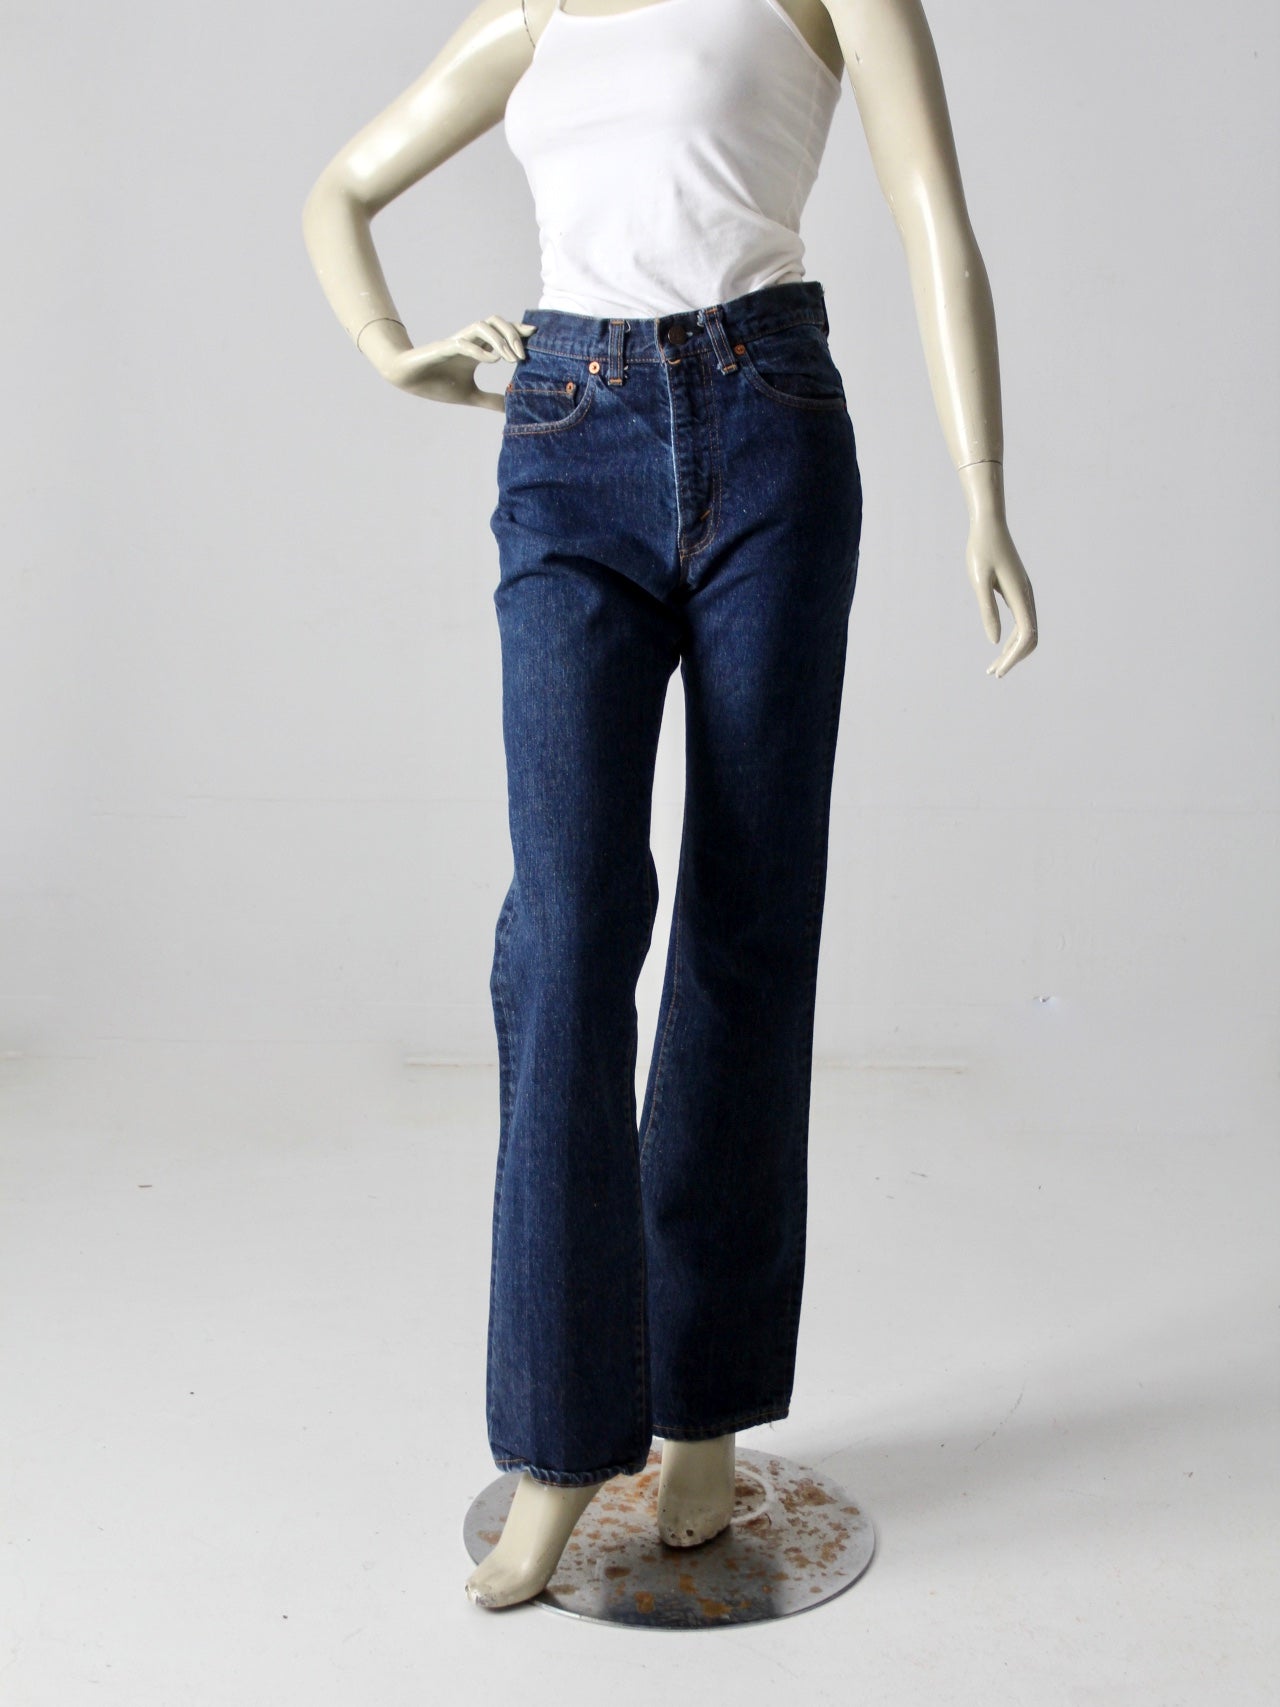 vintage Levis 517 denim jeans, 30x33